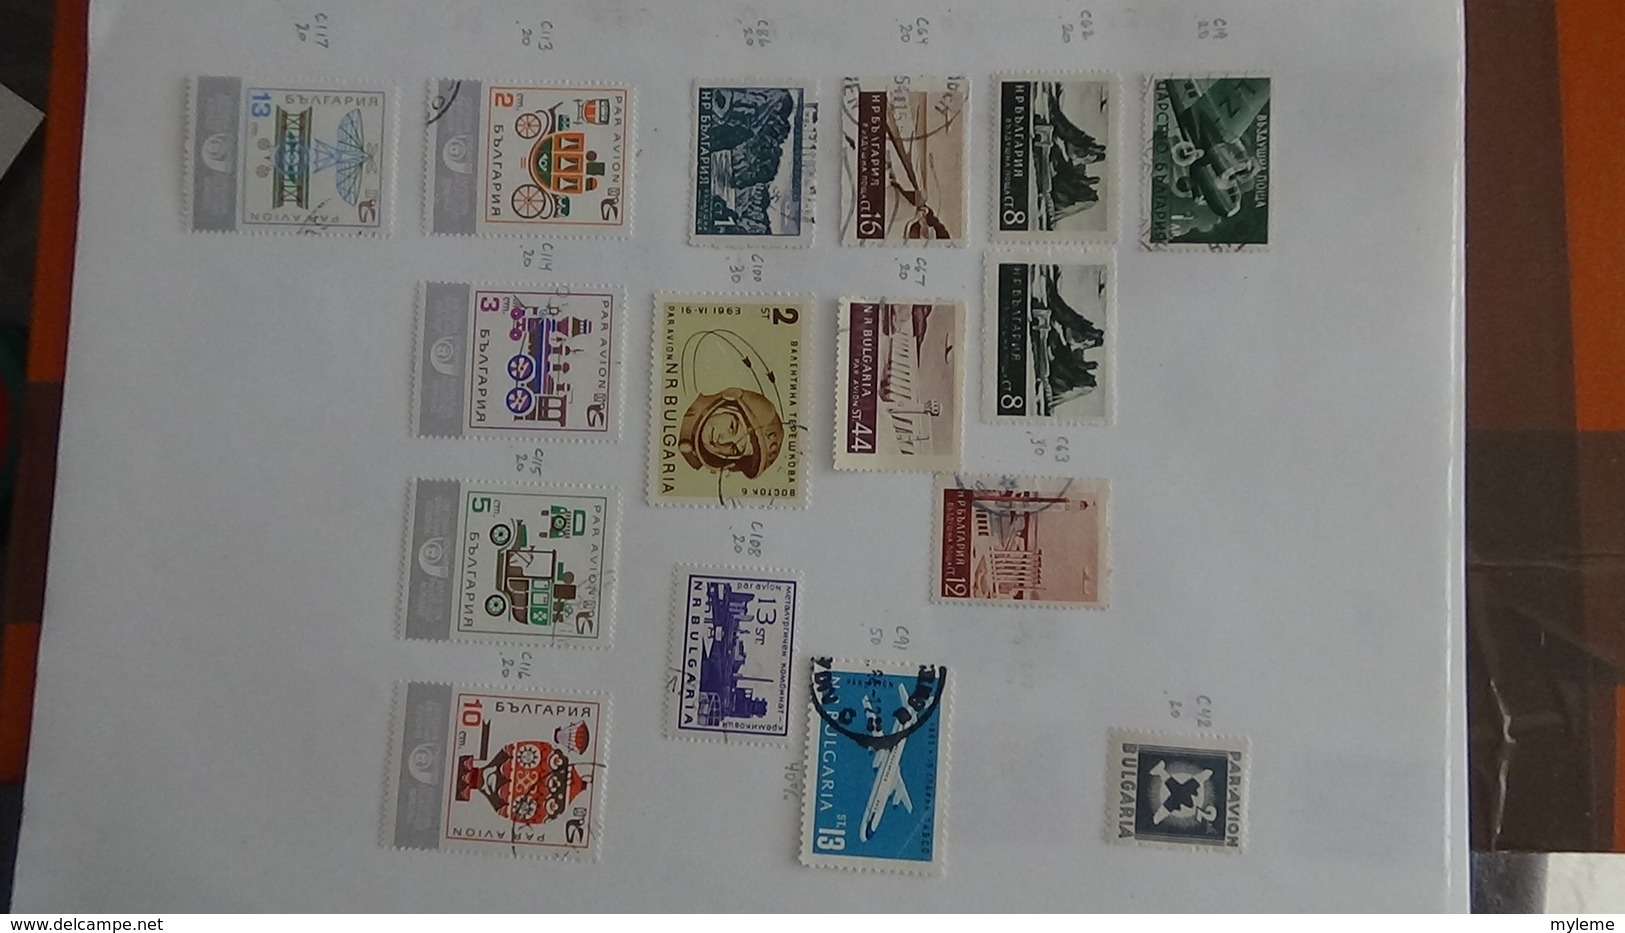 A252 Cahier de timbres de Bulgarie et fins de catalogue  !!! Voir commentaires